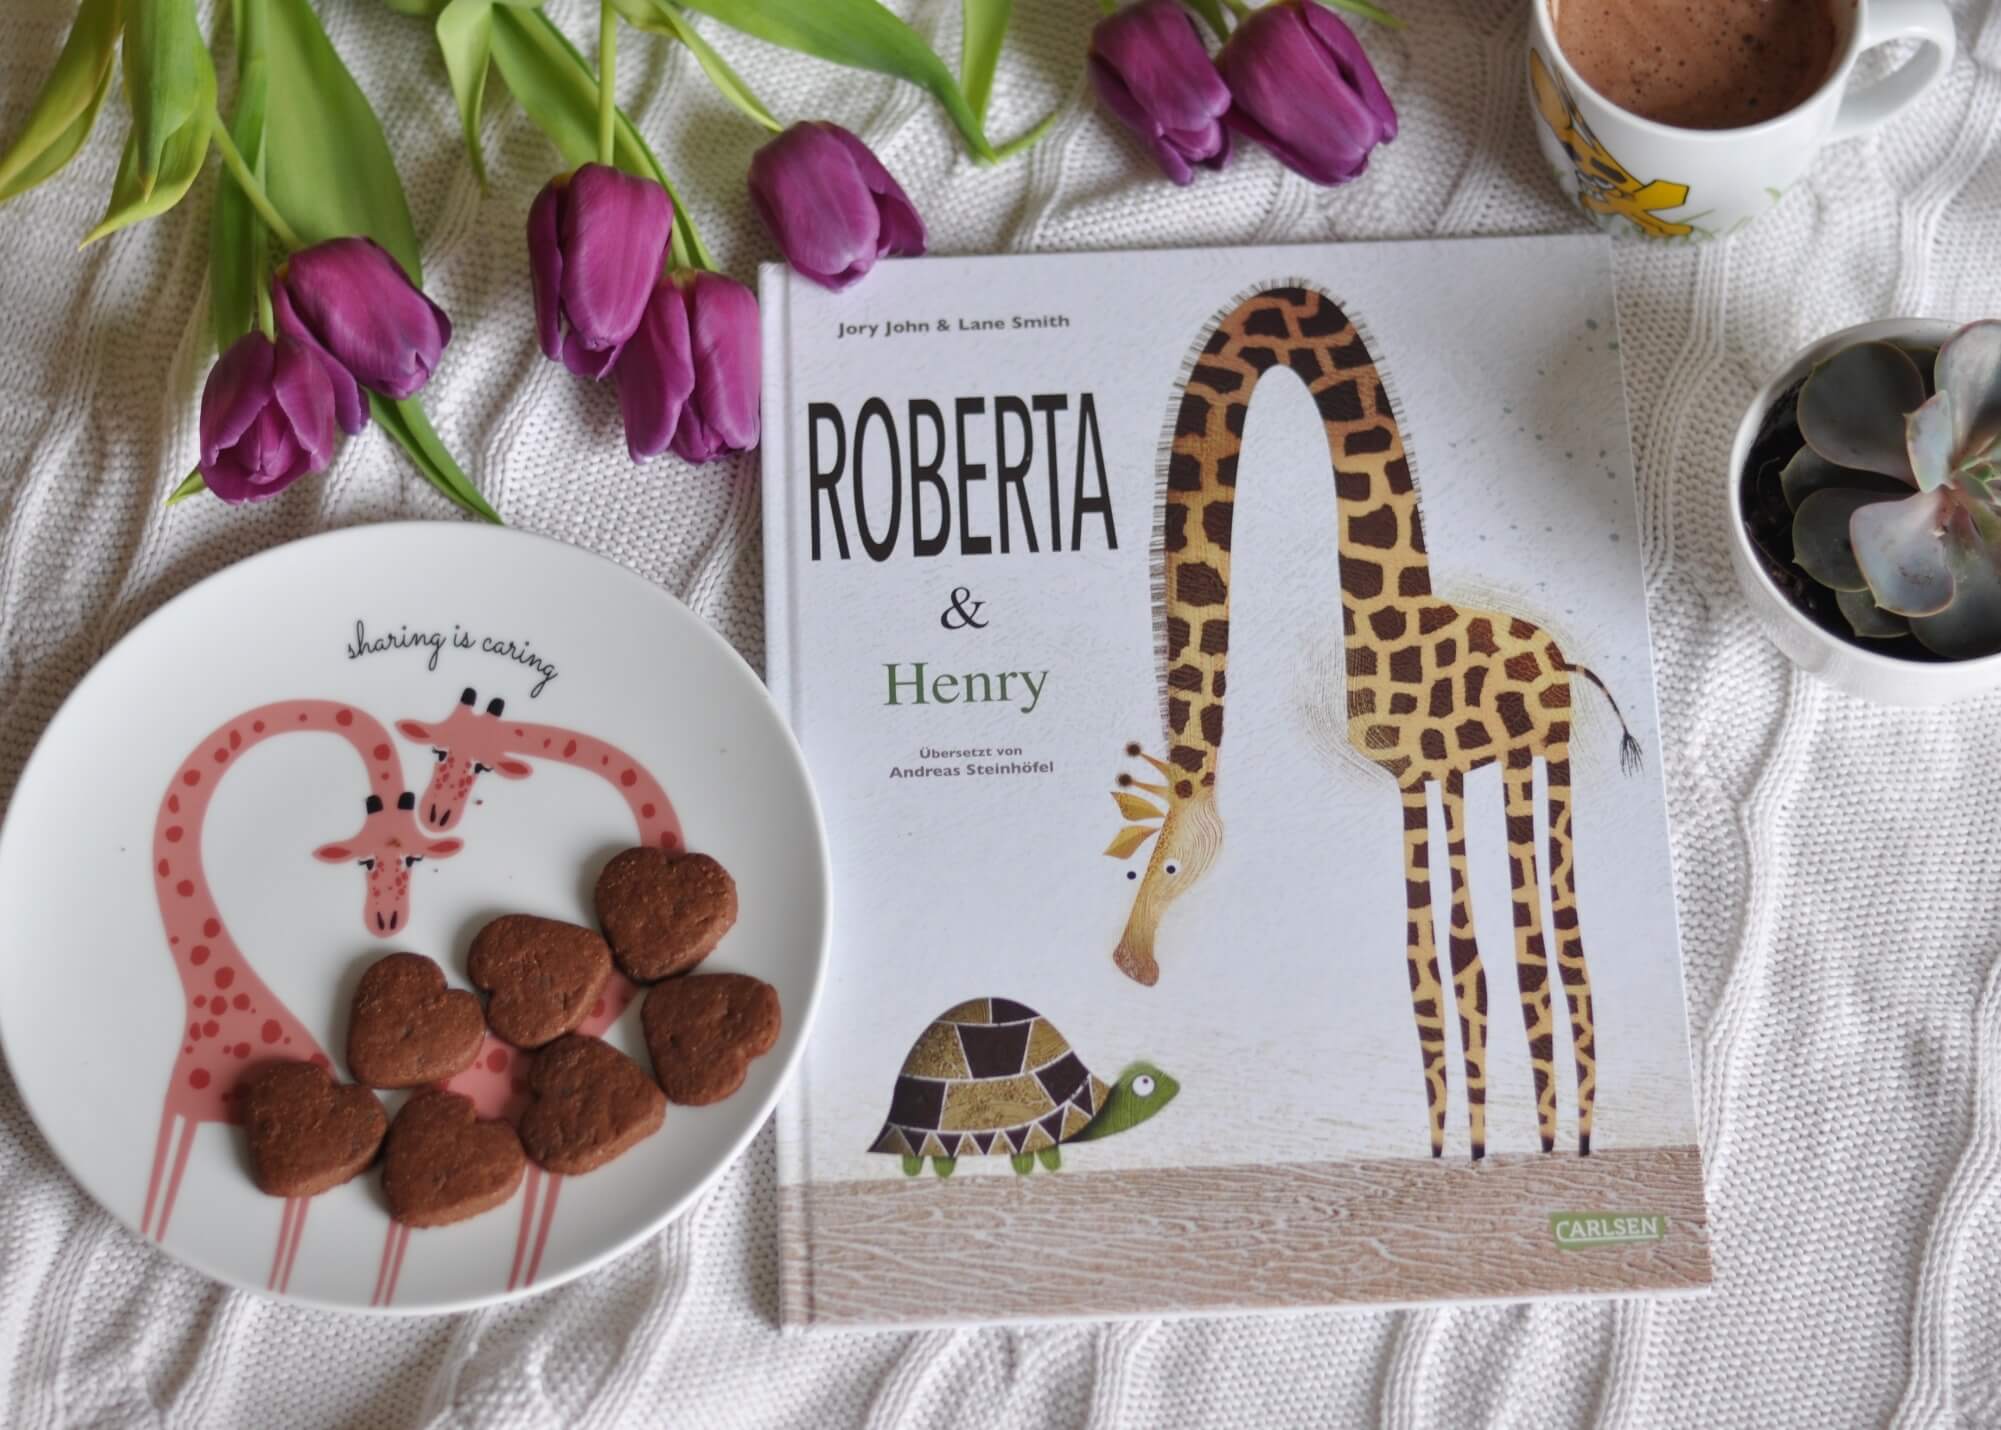 Was ist, wenn man etwas an seinem Körper total doof findet? Die Geschichte von Roberta und Henry zeigt, wie man seine Besonderheiten lieben lernt. #kinderbuch #giraffe #schildkröte #hals #selbstliebe #anderssein #besonders